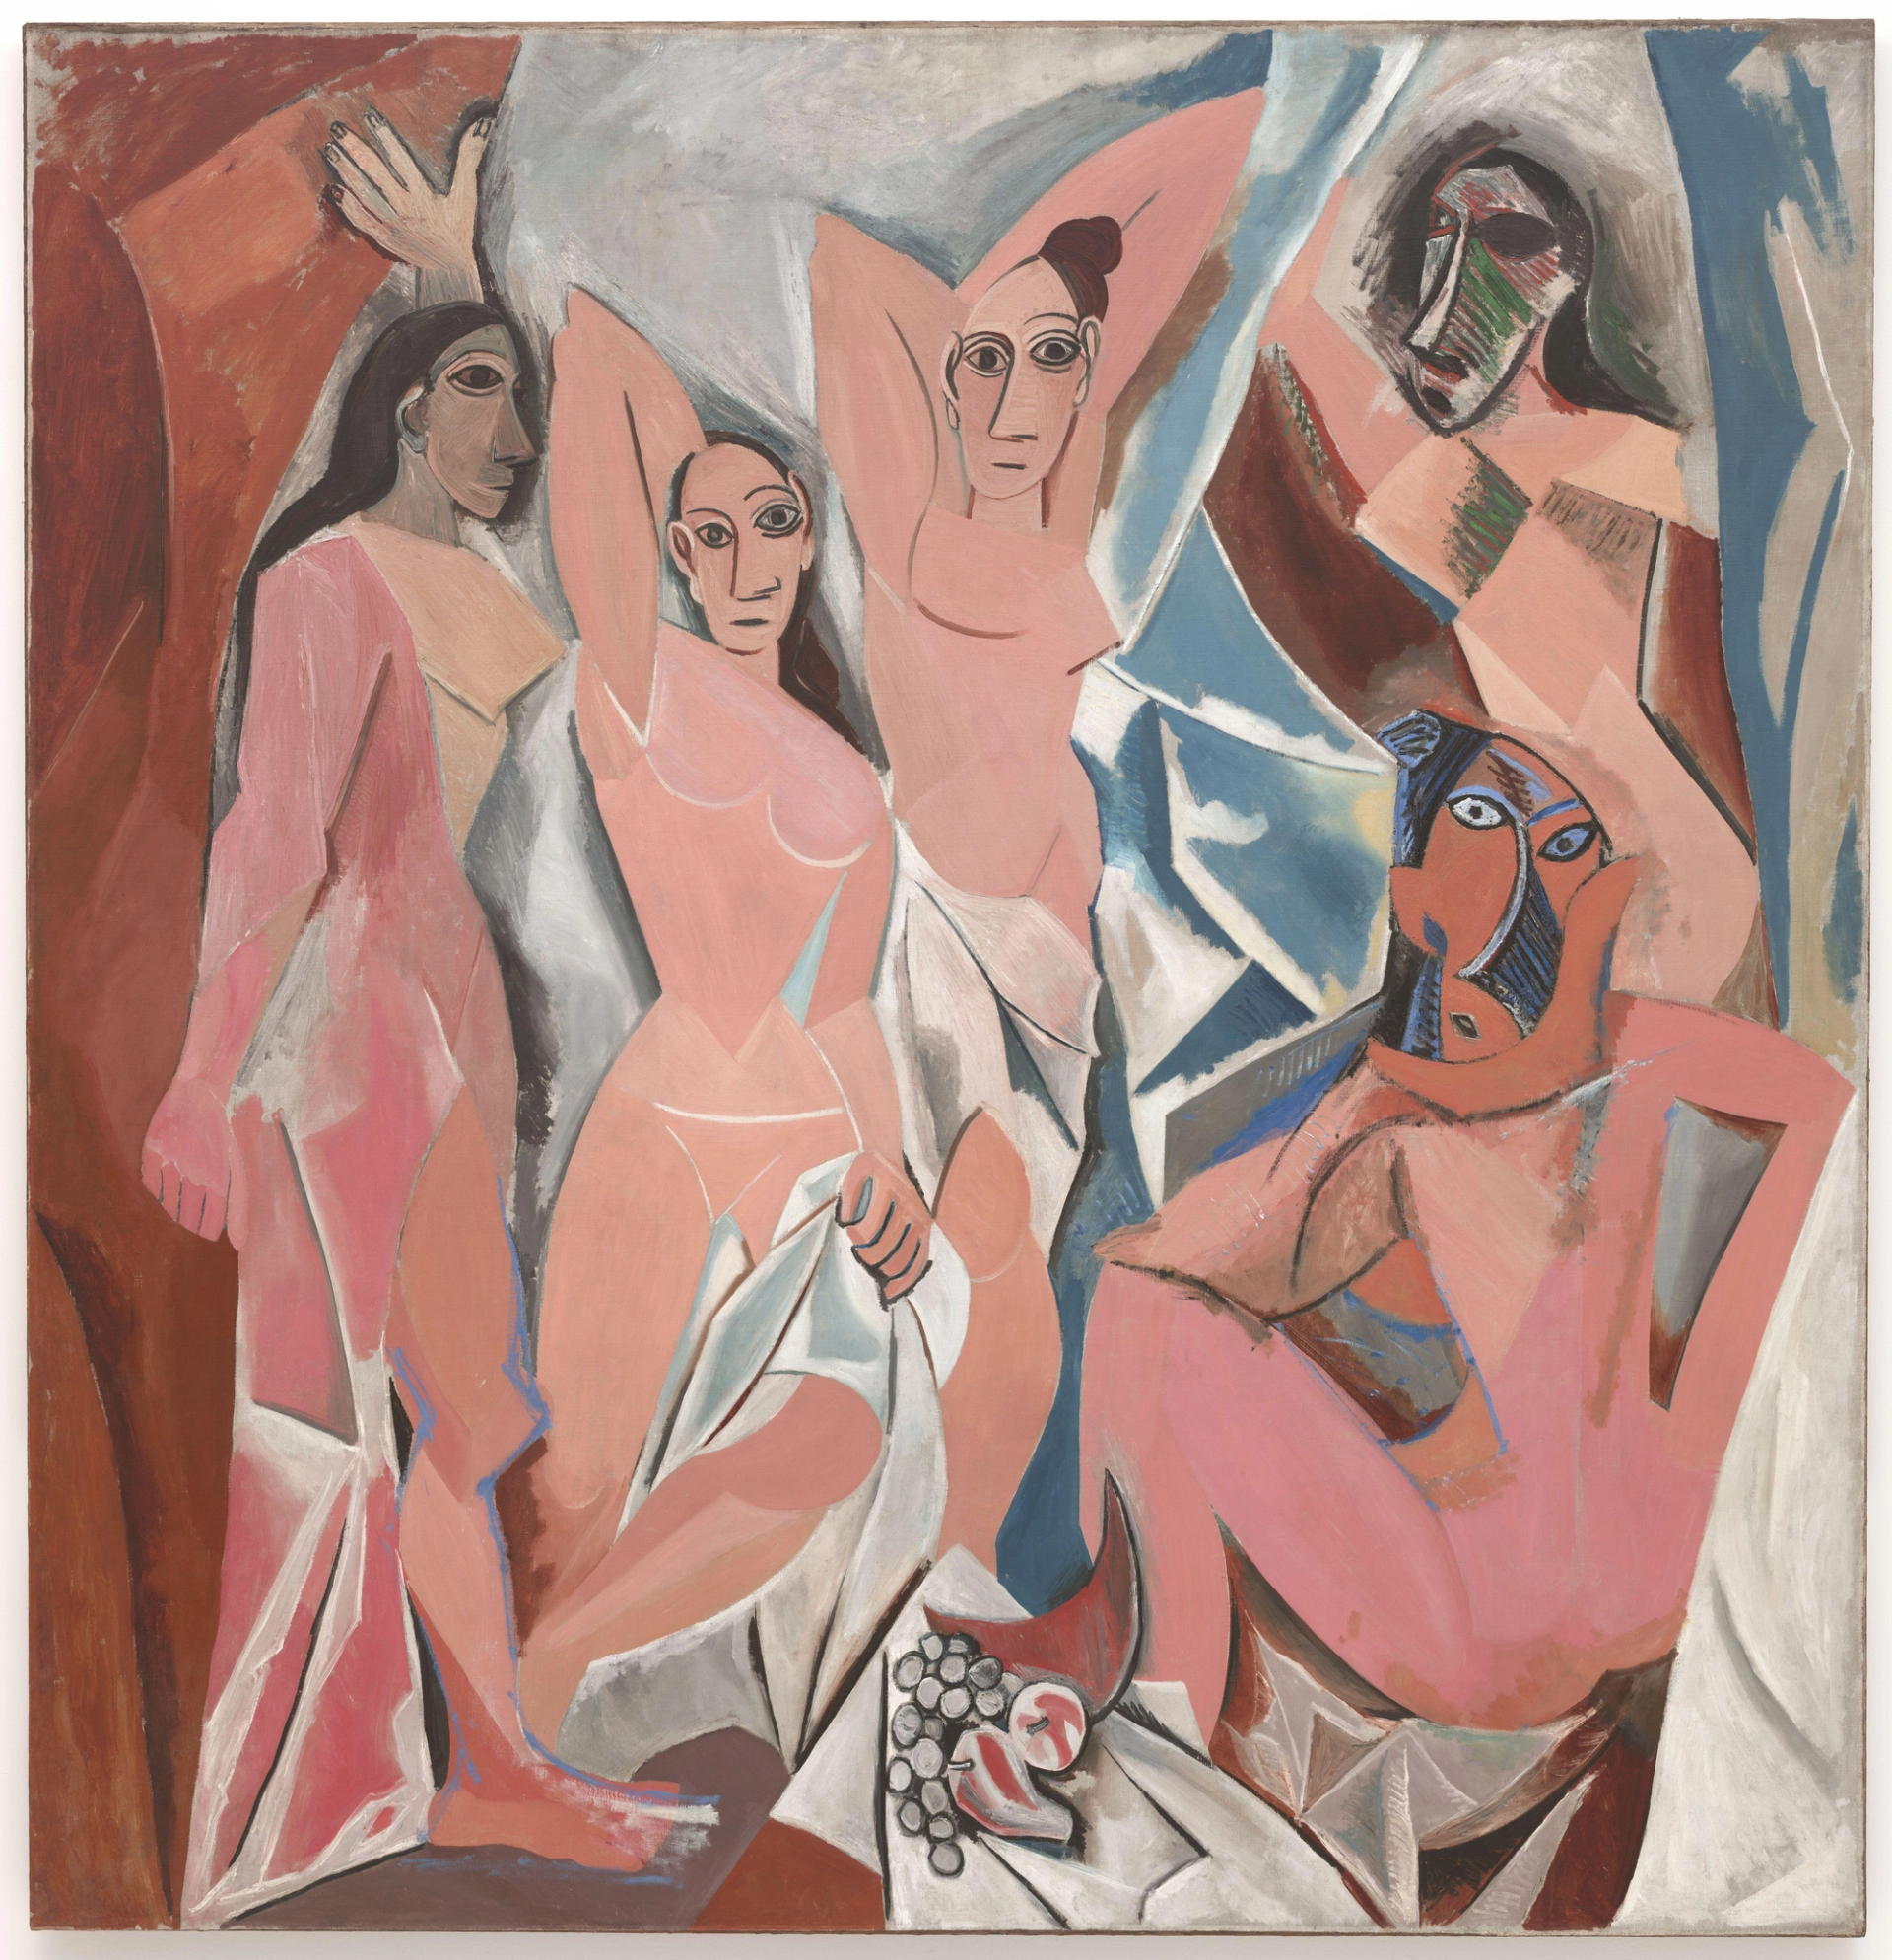 An image of Les Demoiselles d'Avignon by Pablo Picasso. It shows five women i vario